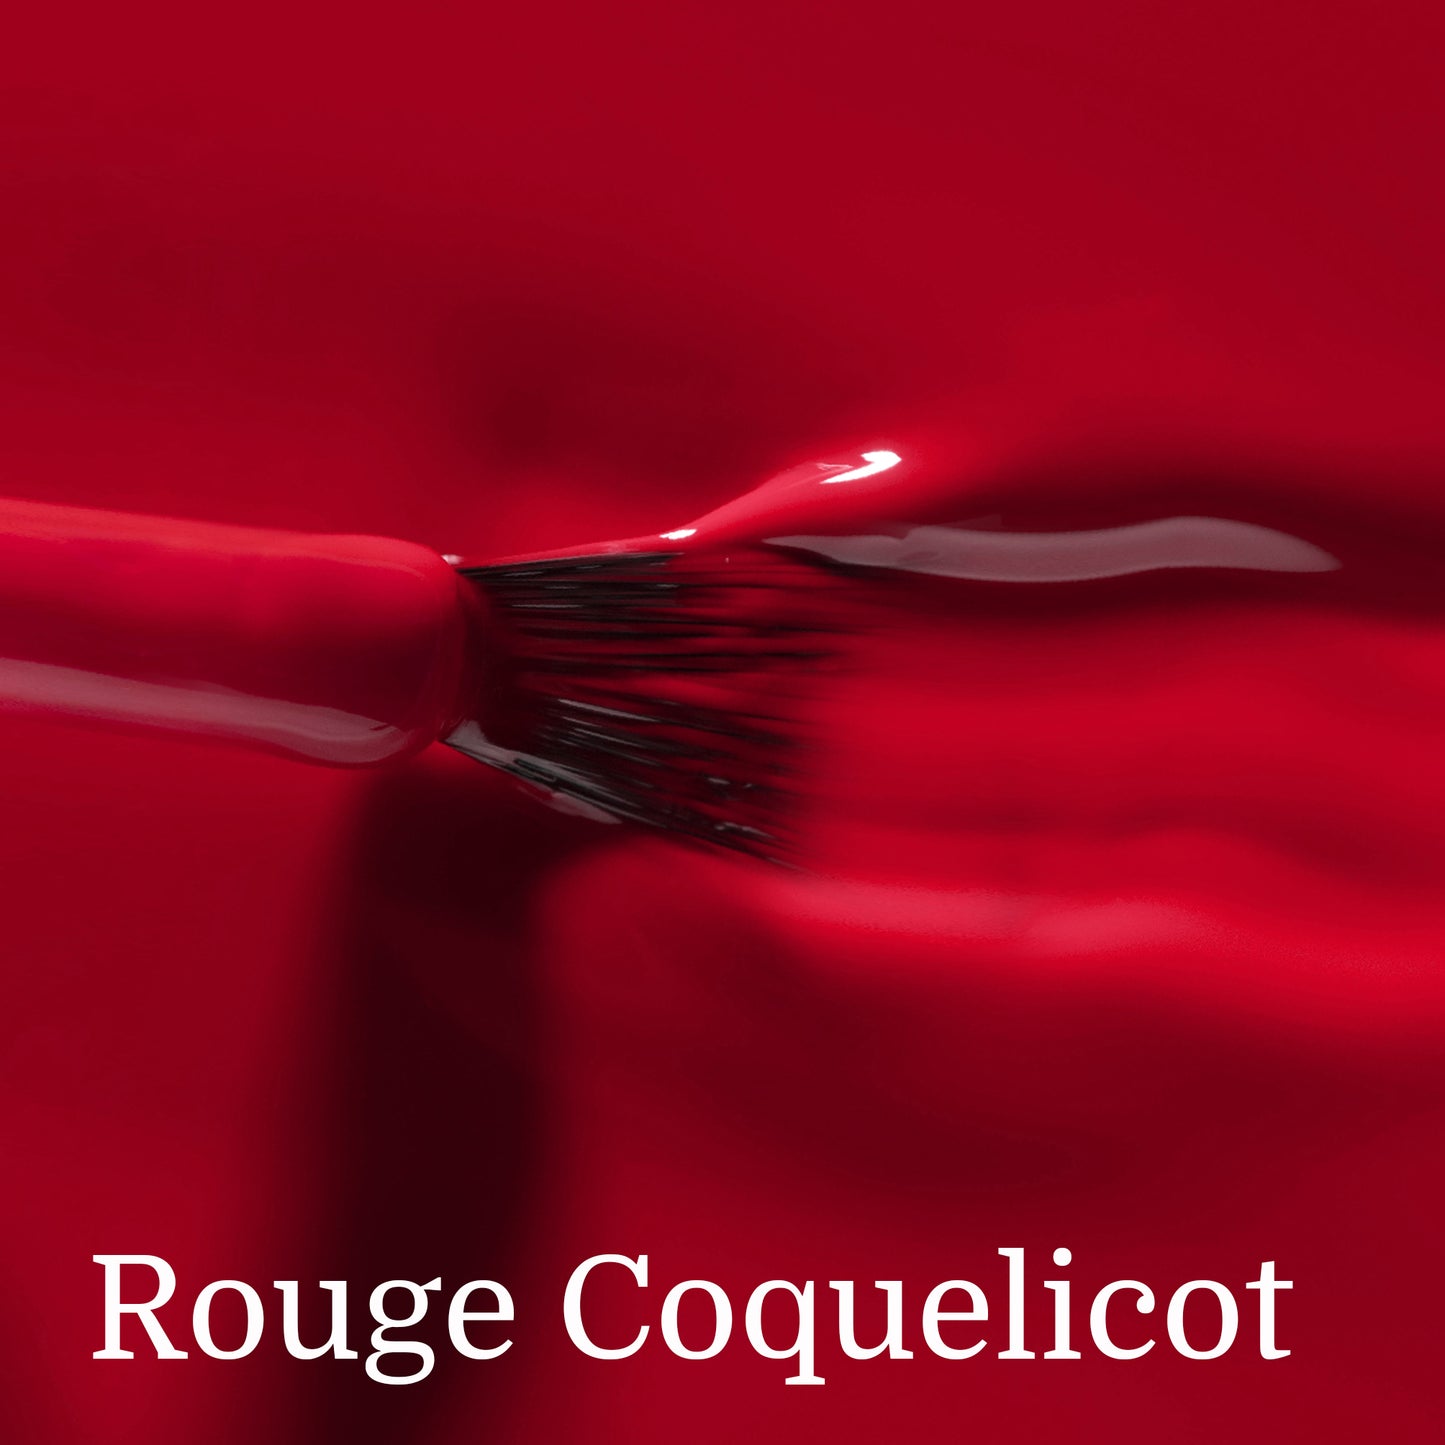 Le TRIO : Rouge Coquelicot – Bois de Rose – Cerise noire